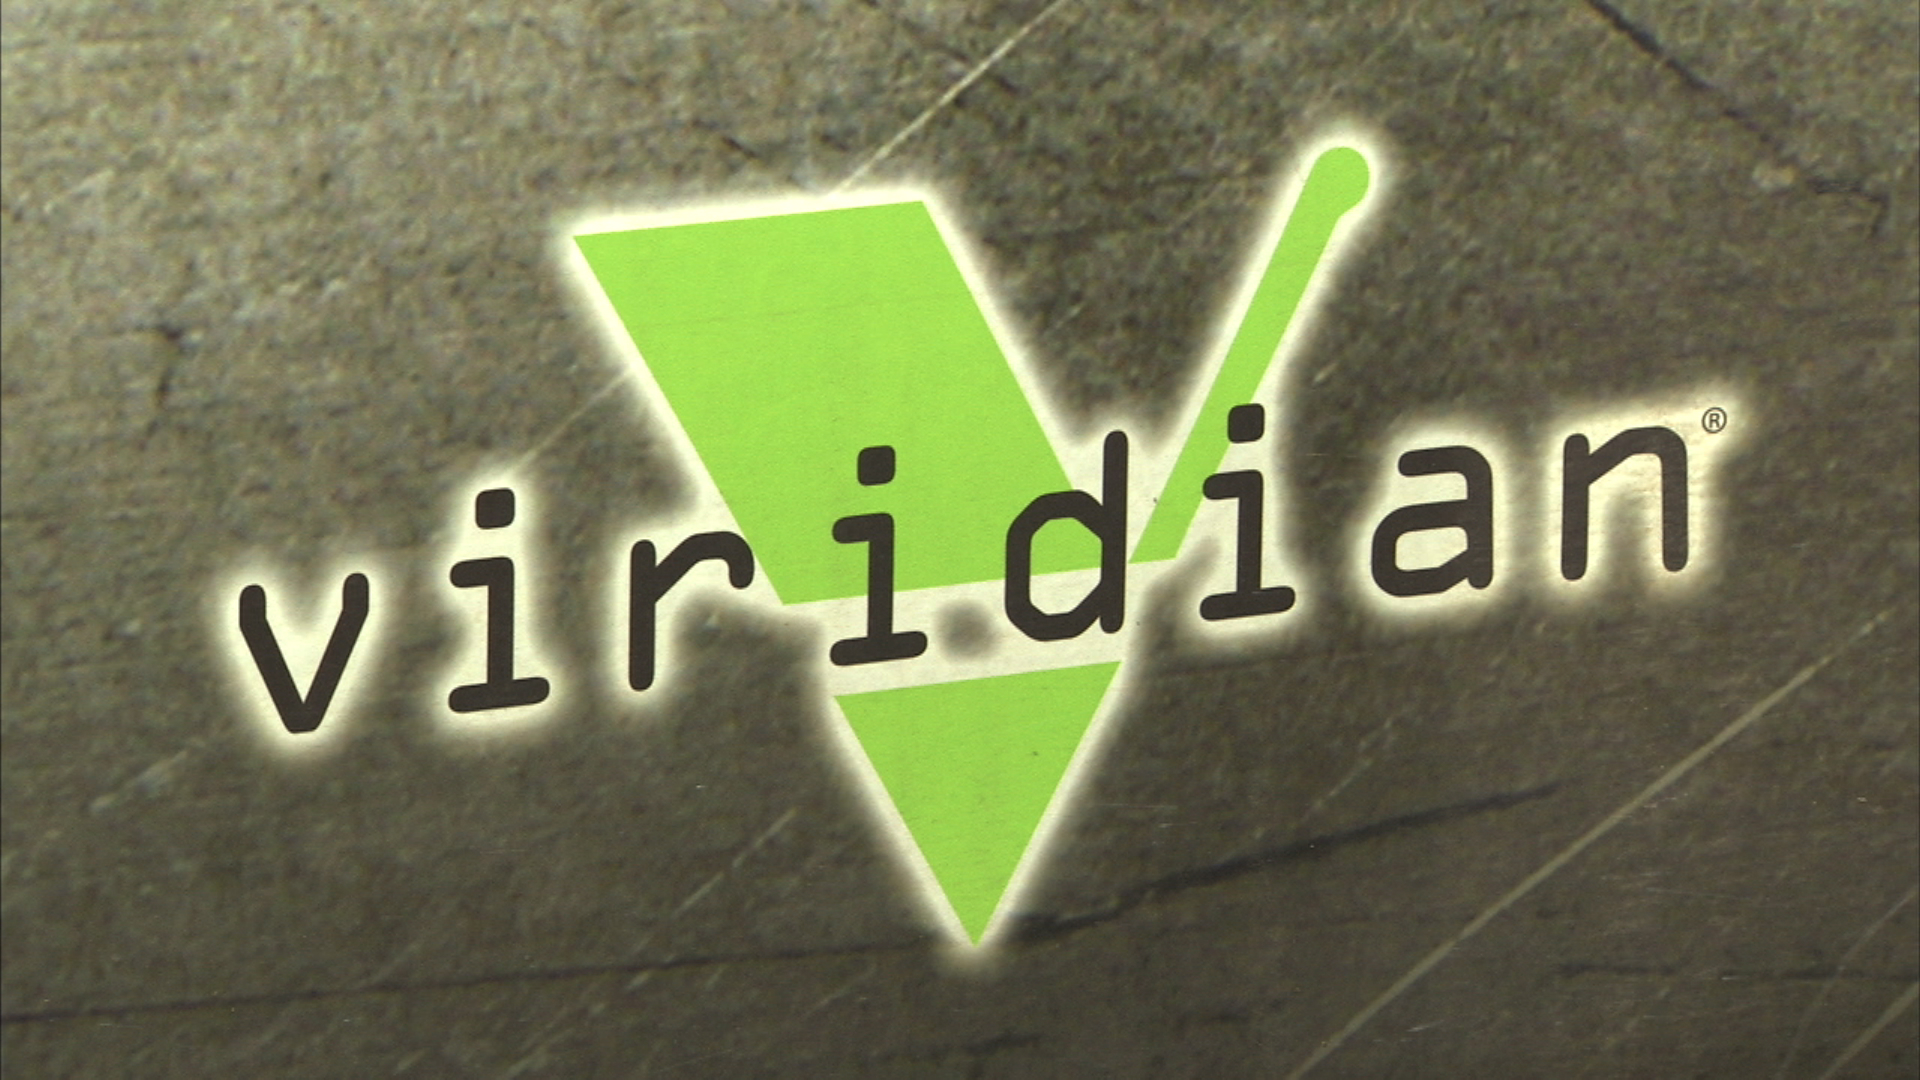 Viridian logo